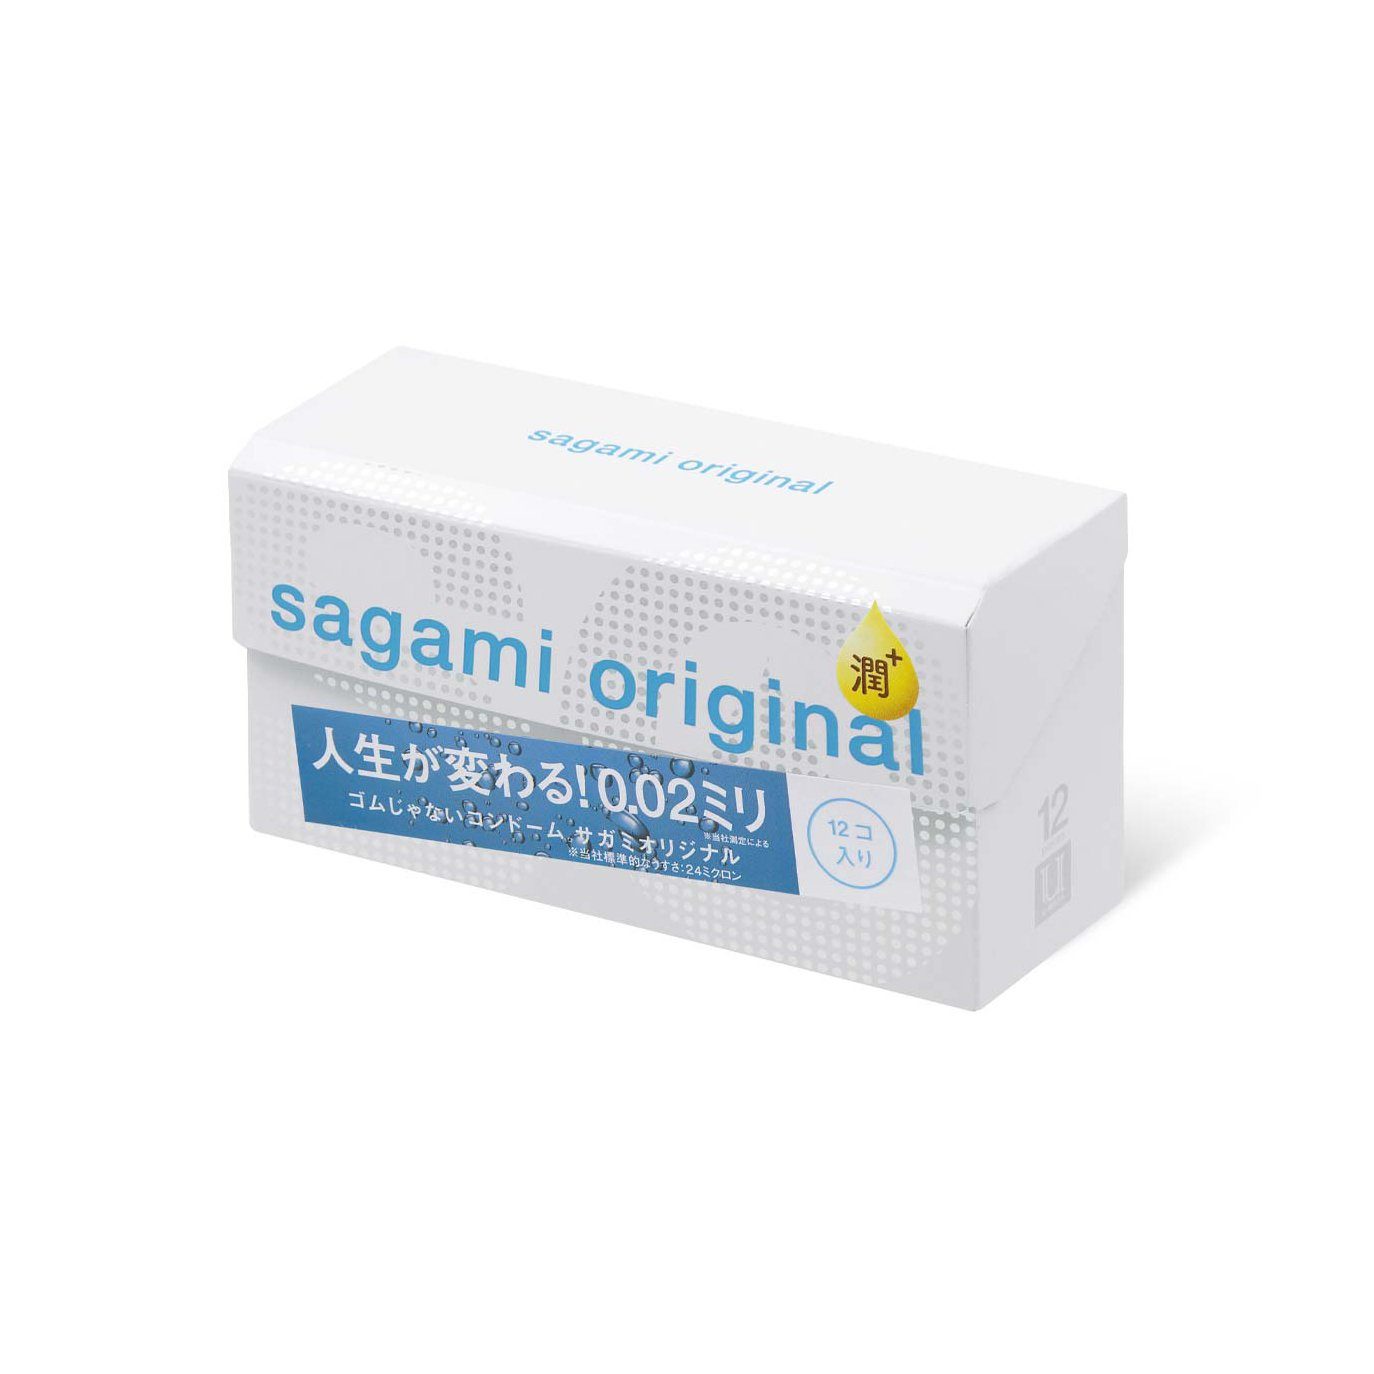 SAGAMI 相模原創 0.02 極潤 (第二代) PU 安全套 12 片裝 安全套 購買